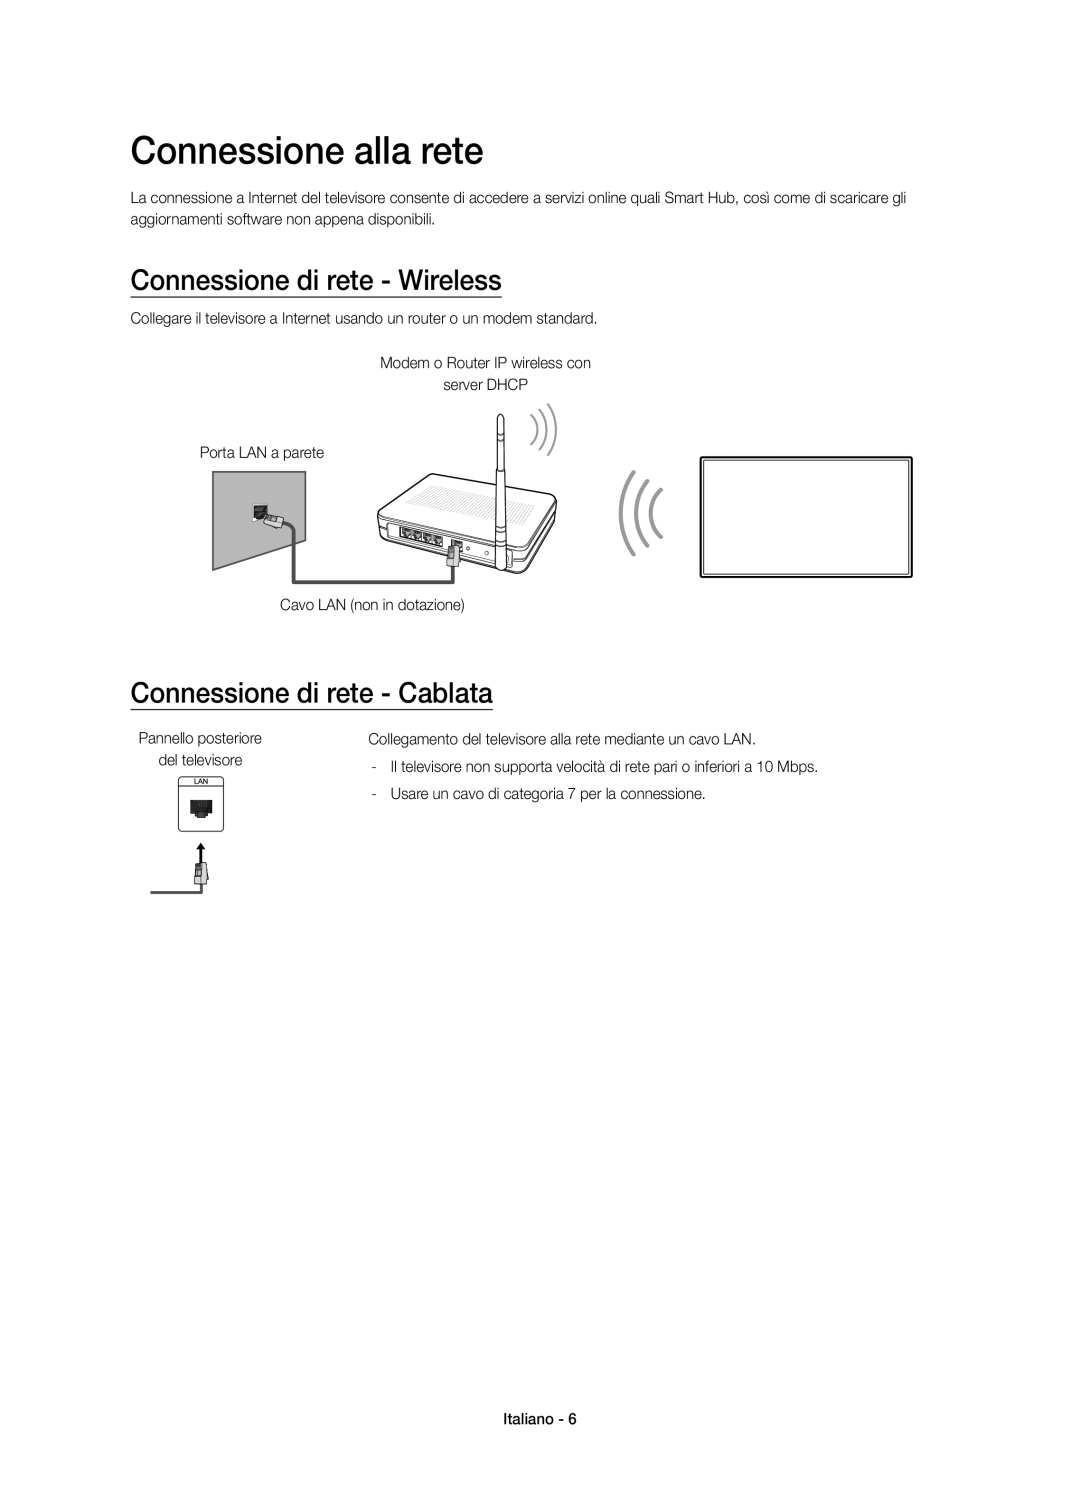 Samsung UE32J5670SUXZG manual Connessione alla rete, Connessione di rete - Wireless, Connessione di rete - Cablata 